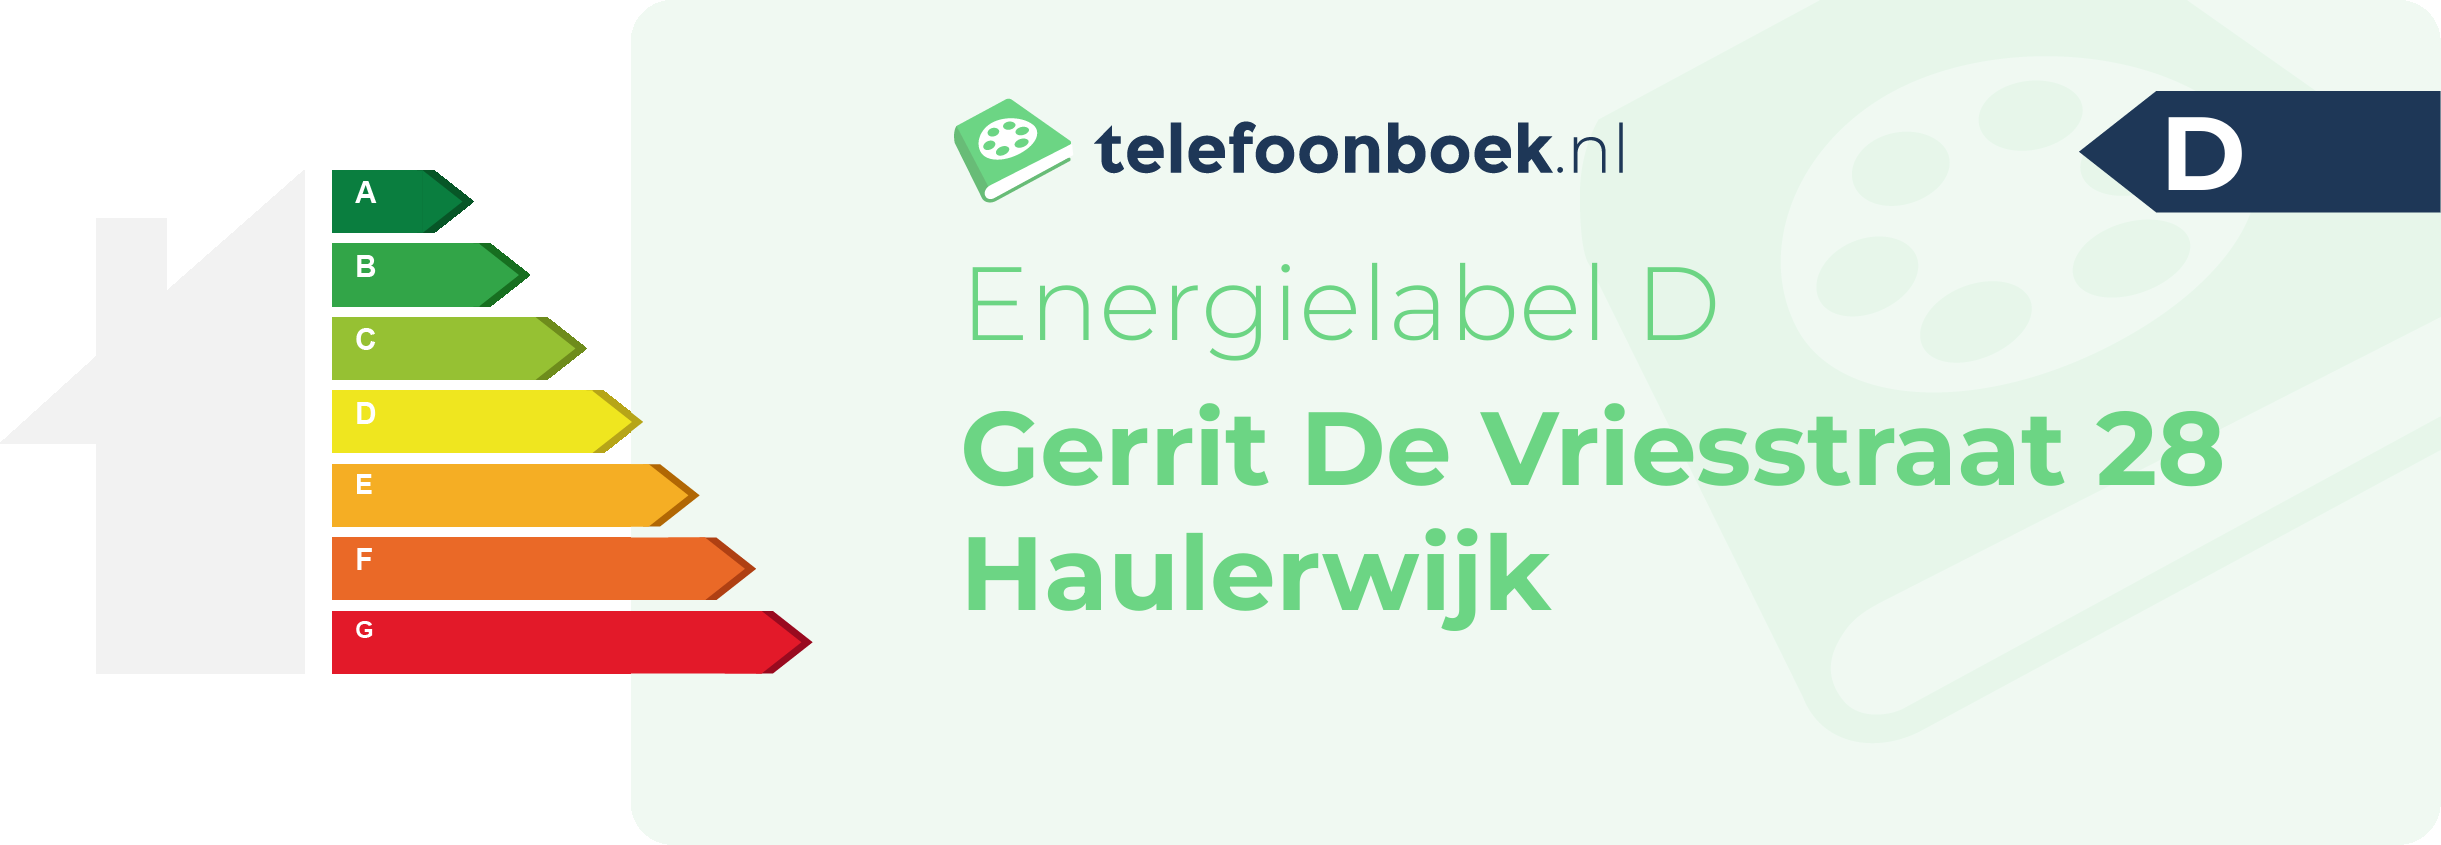 Energielabel Gerrit De Vriesstraat 28 Haulerwijk